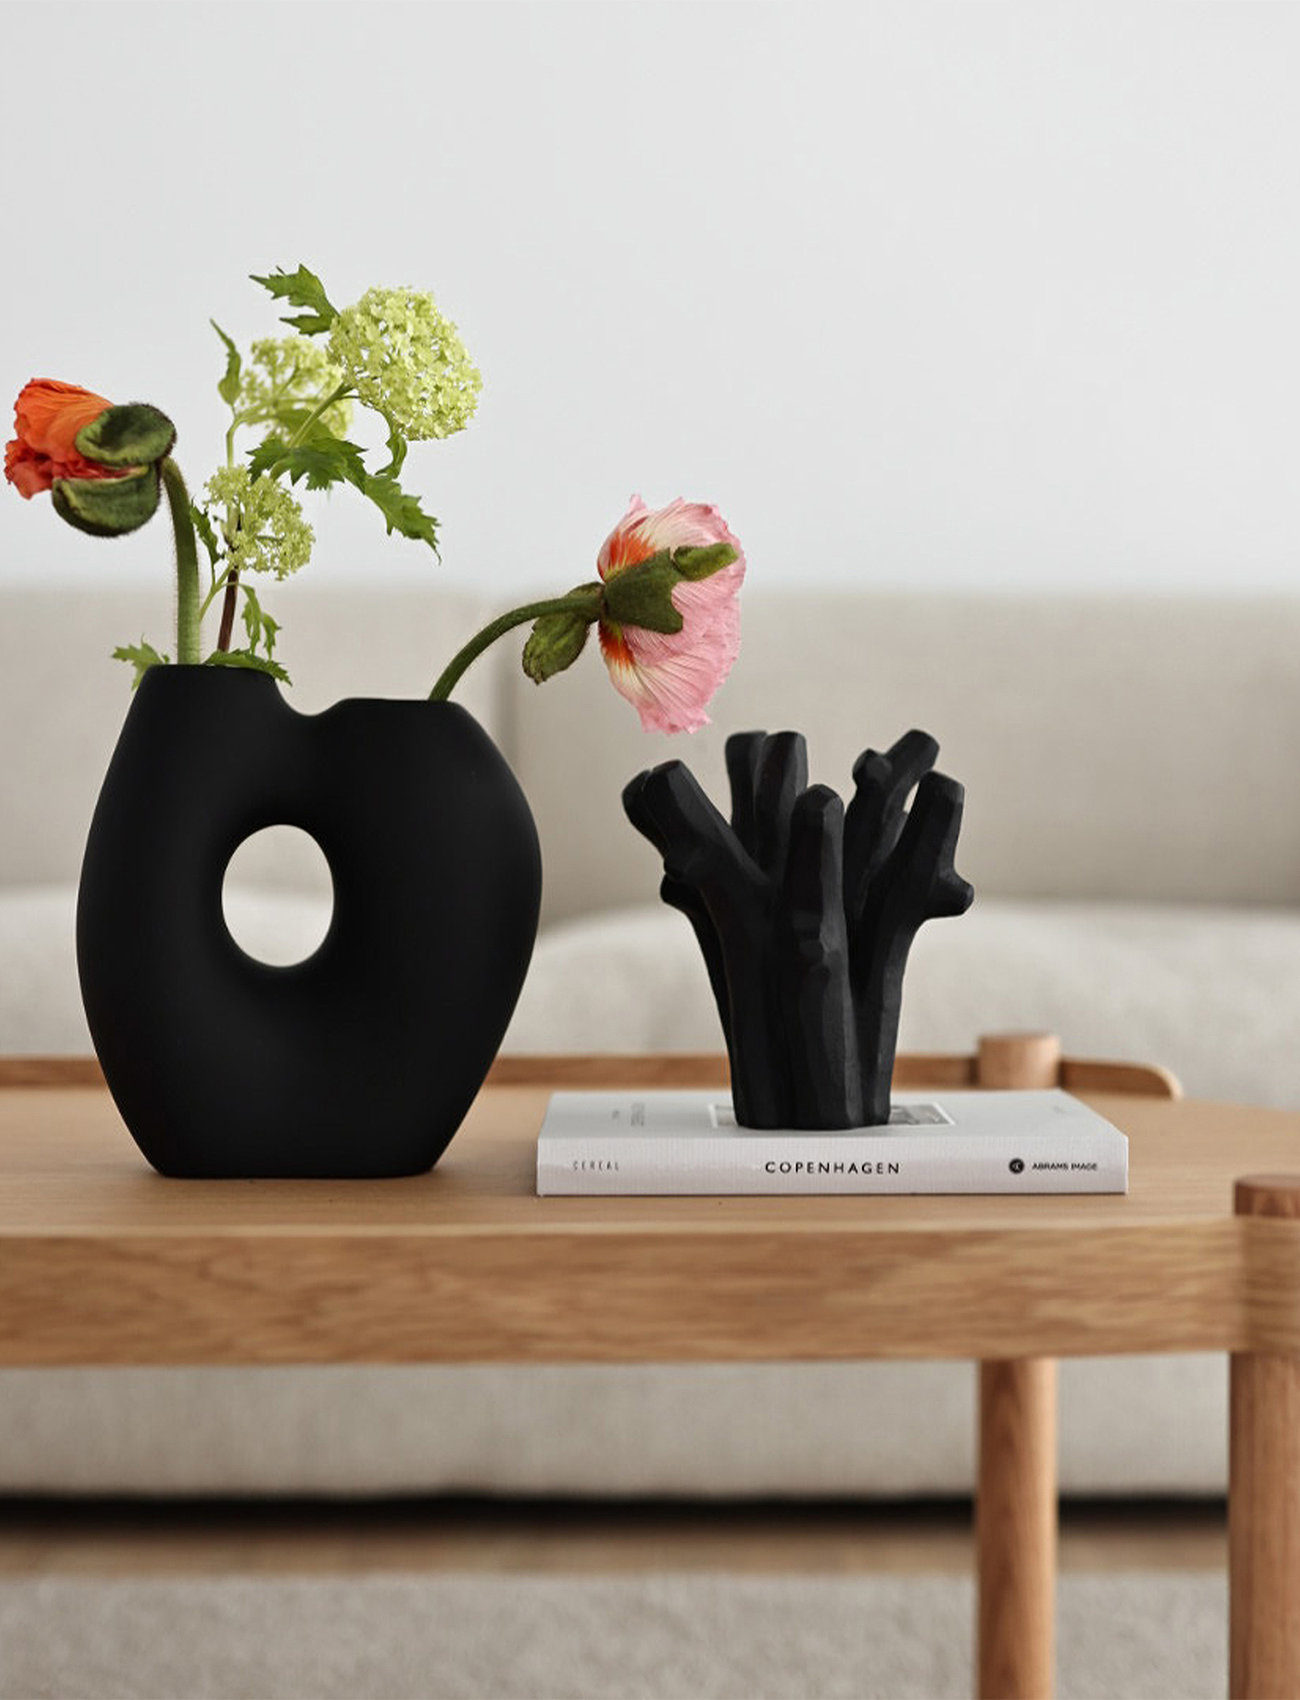 Cooee Design - Frodig Vase - große vasen - black - 1